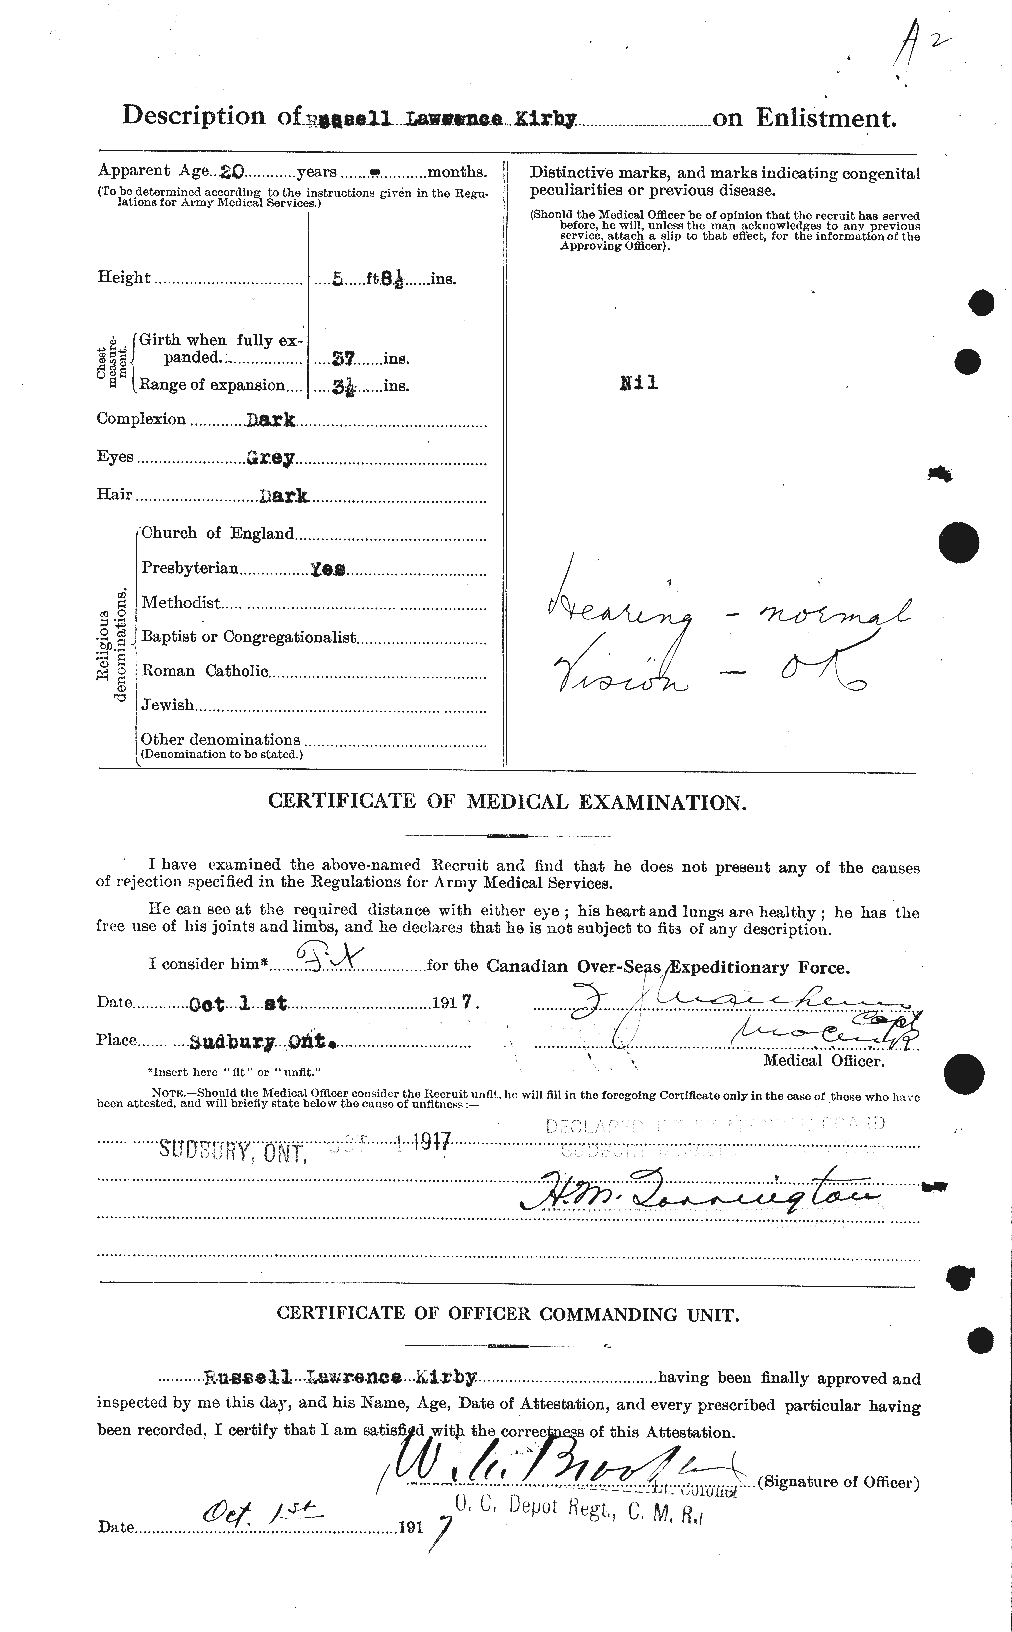 Dossiers du Personnel de la Première Guerre mondiale - CEC 437272b